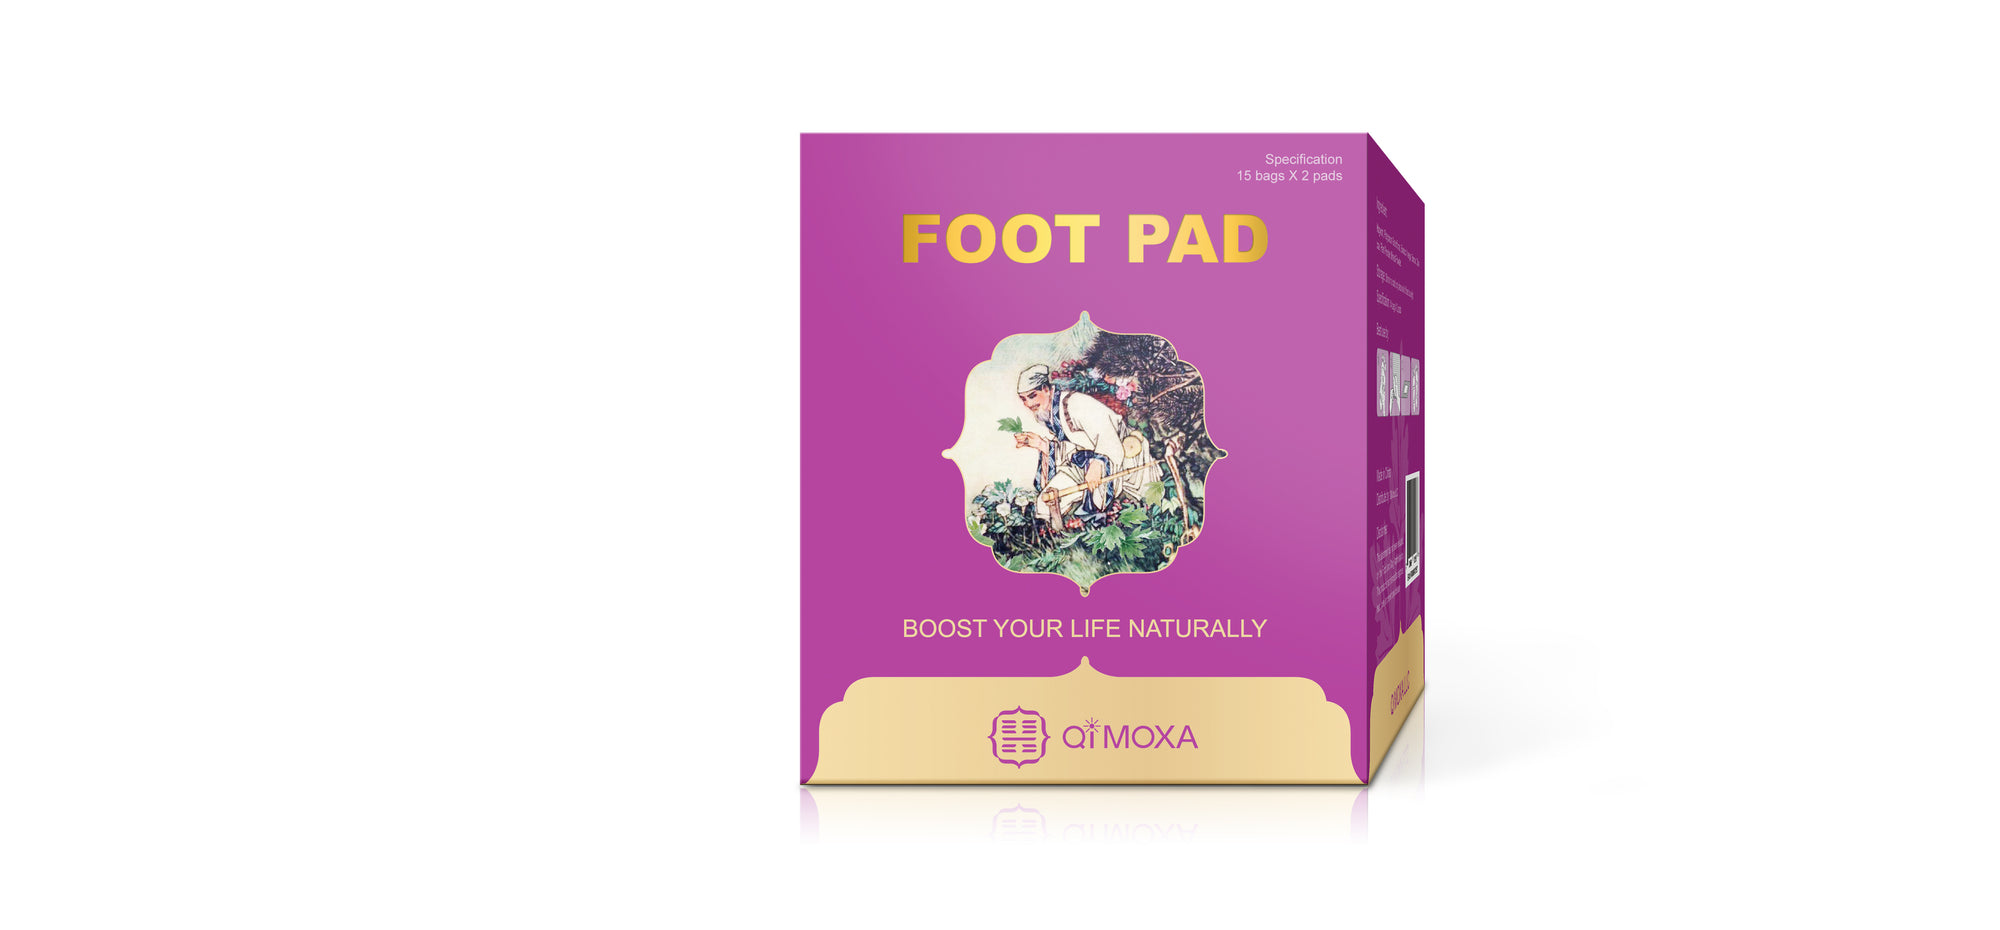 QiMoxa Foot Pad